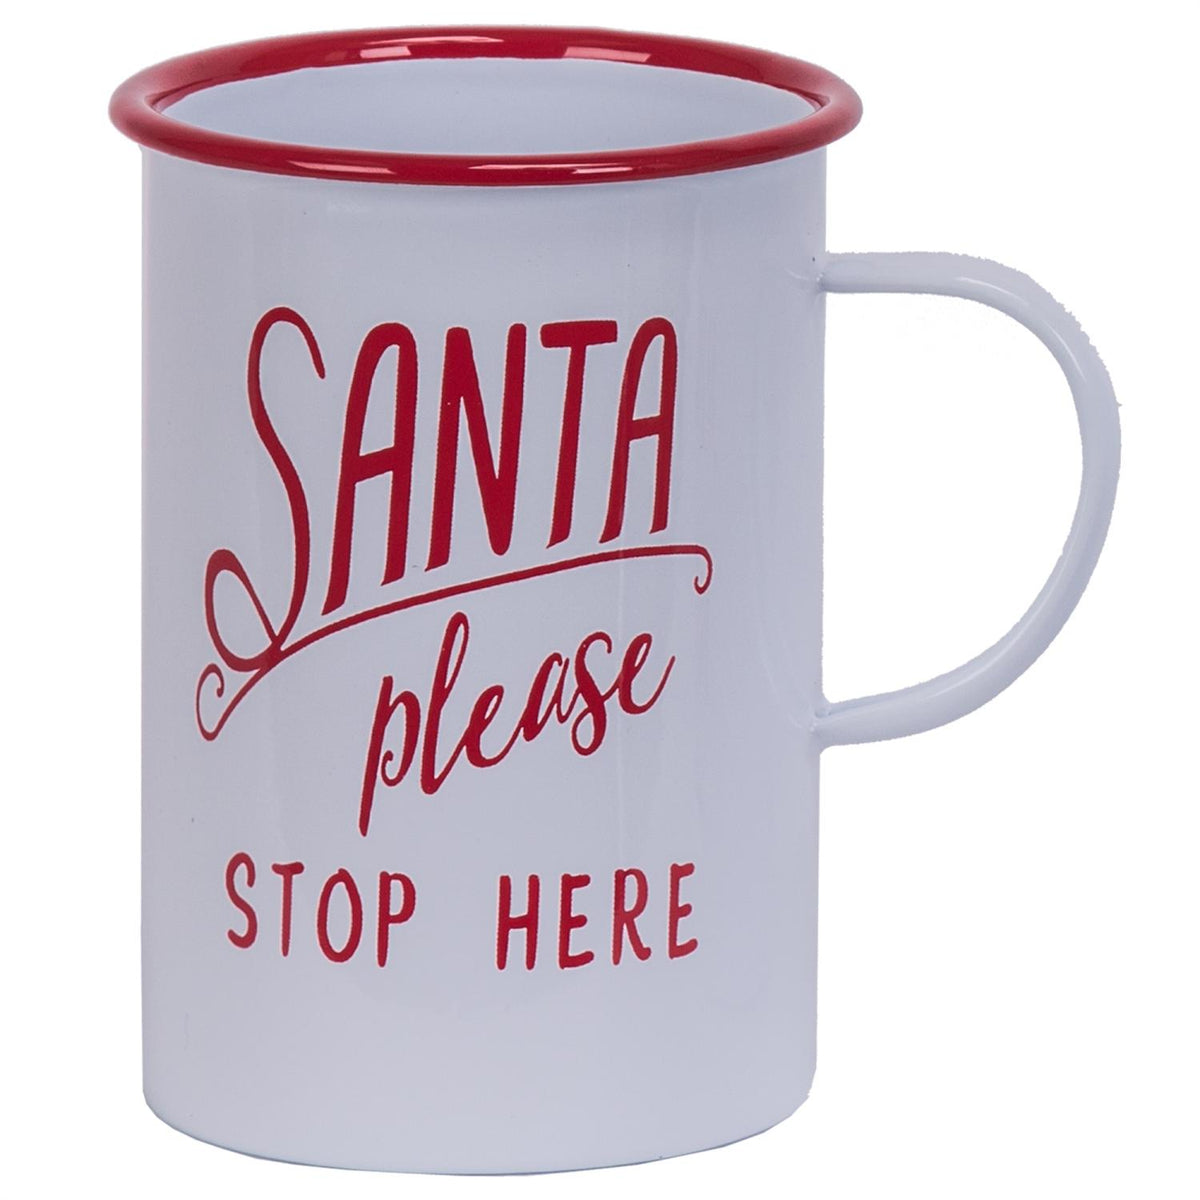 Santa Please Stop Here Enamelware Mug